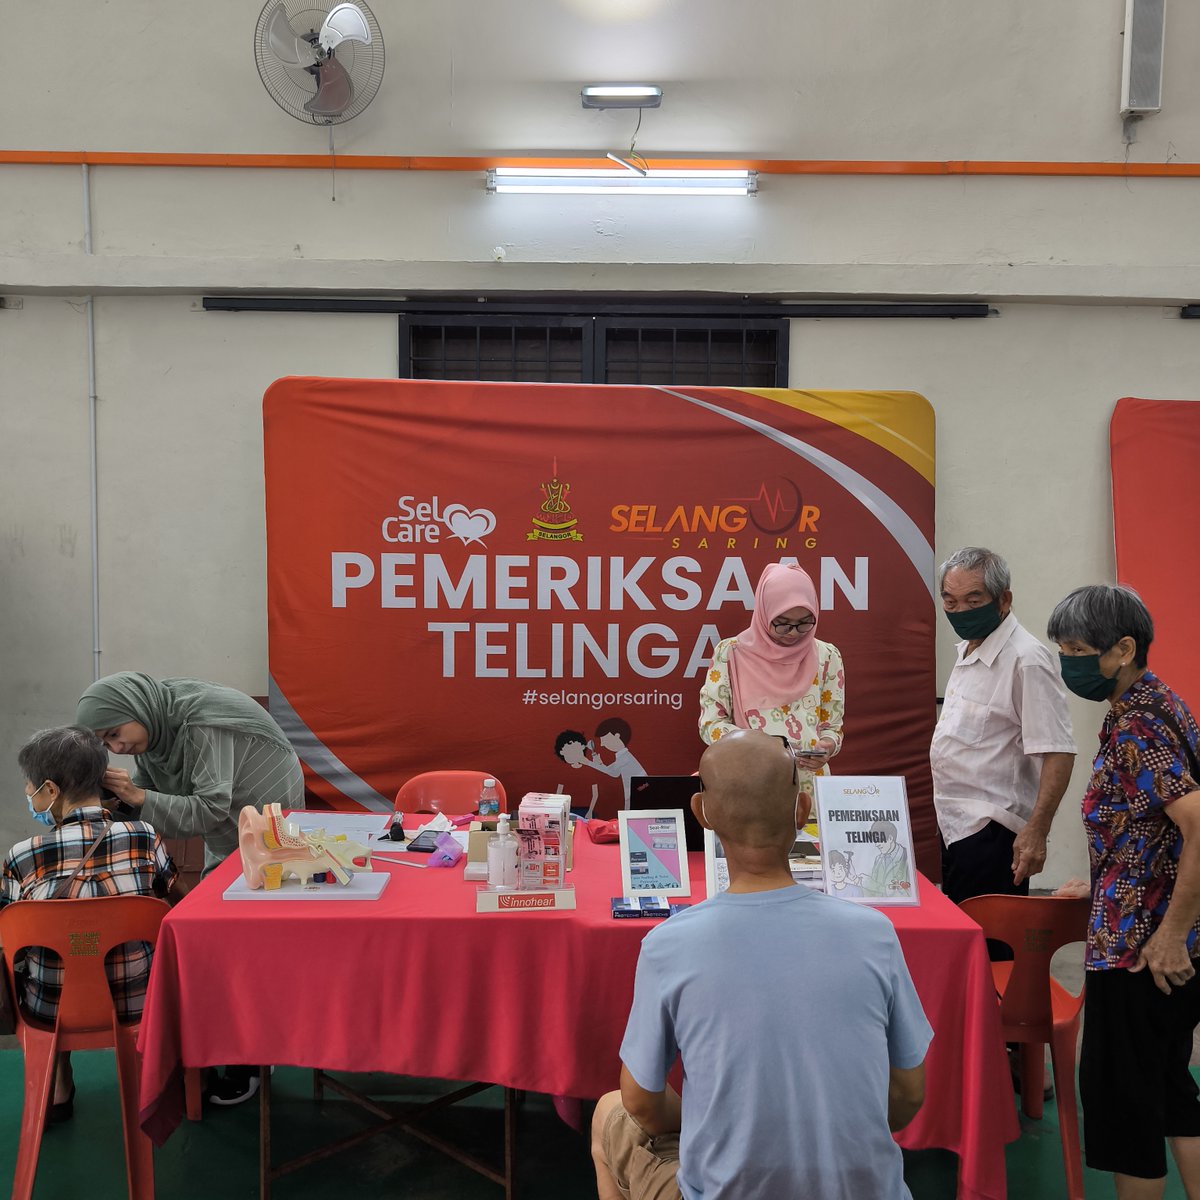 21 April 2024 - Program saringan kesihatan percuma, Selangor Saring yang dikendalikan oleh Selcare telah diadakan di Dewan Serbaguna Kampung Chuang Rasa di Kuala Kubu Bharu.

#Selgate #Selcare #SelangorSaring #AlwaysThereToCare #SaringAwalCegahAwal